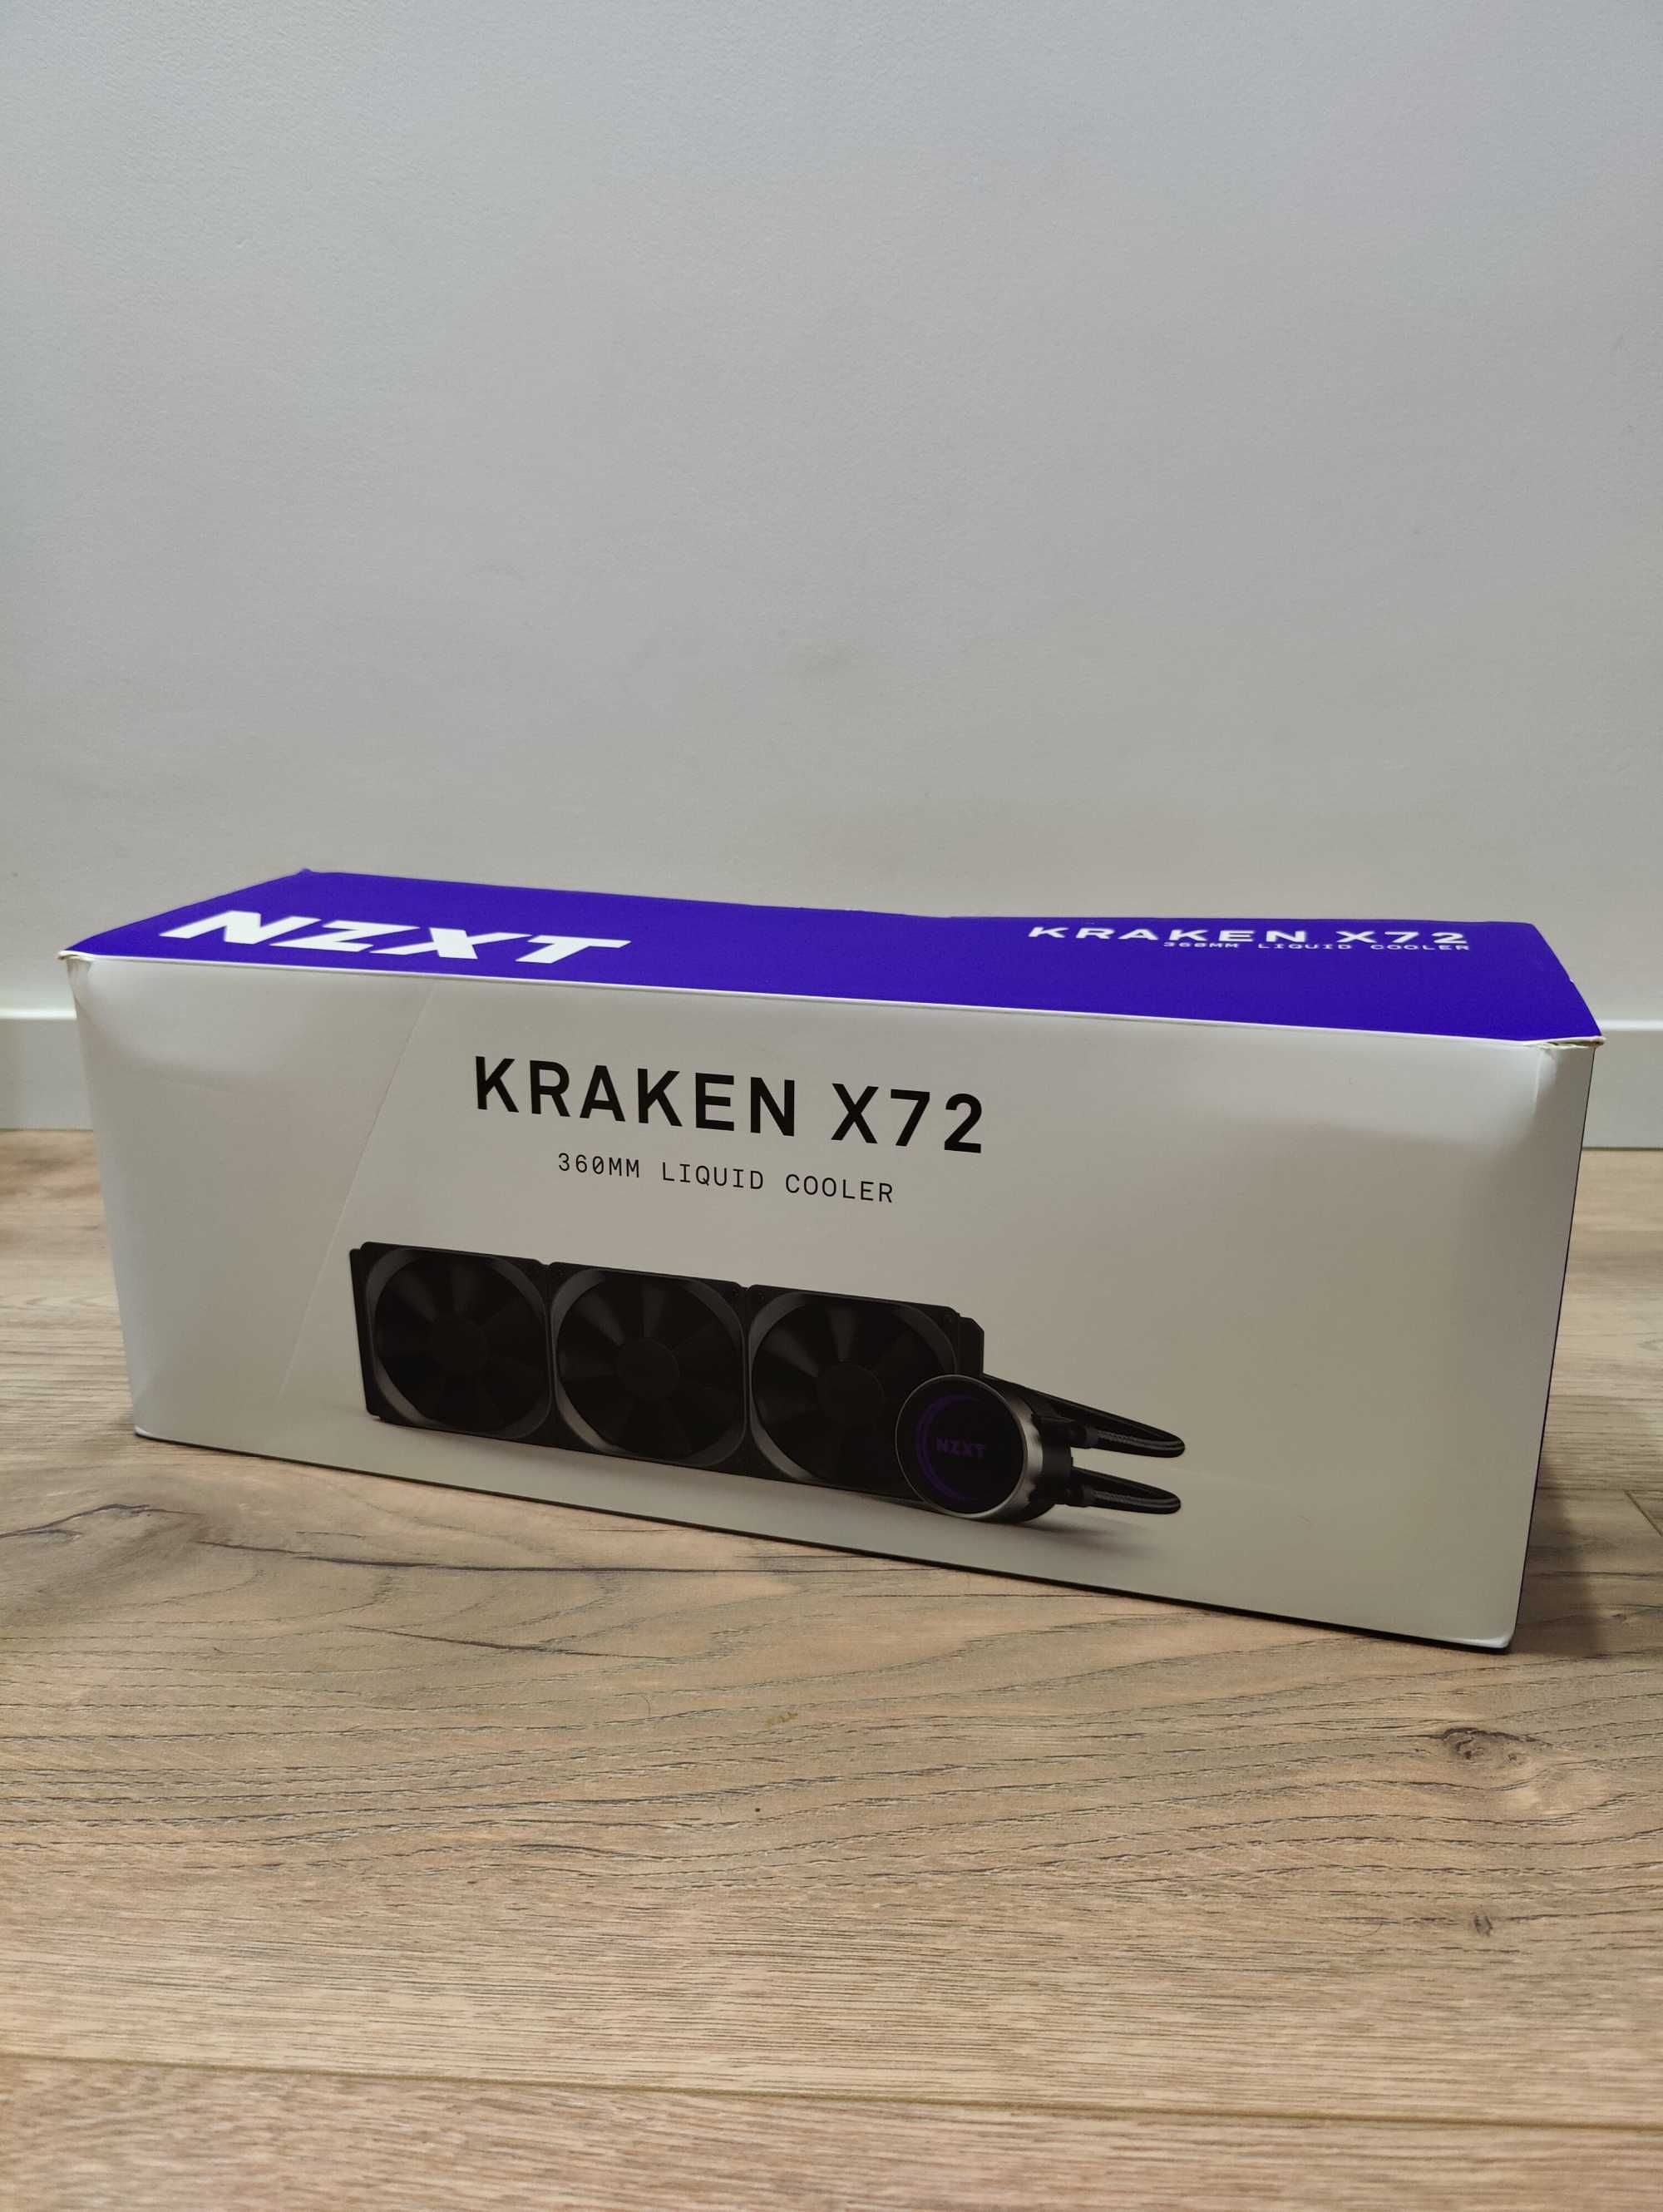 NZXT Kraken X72 Liquid Cooler 360mm